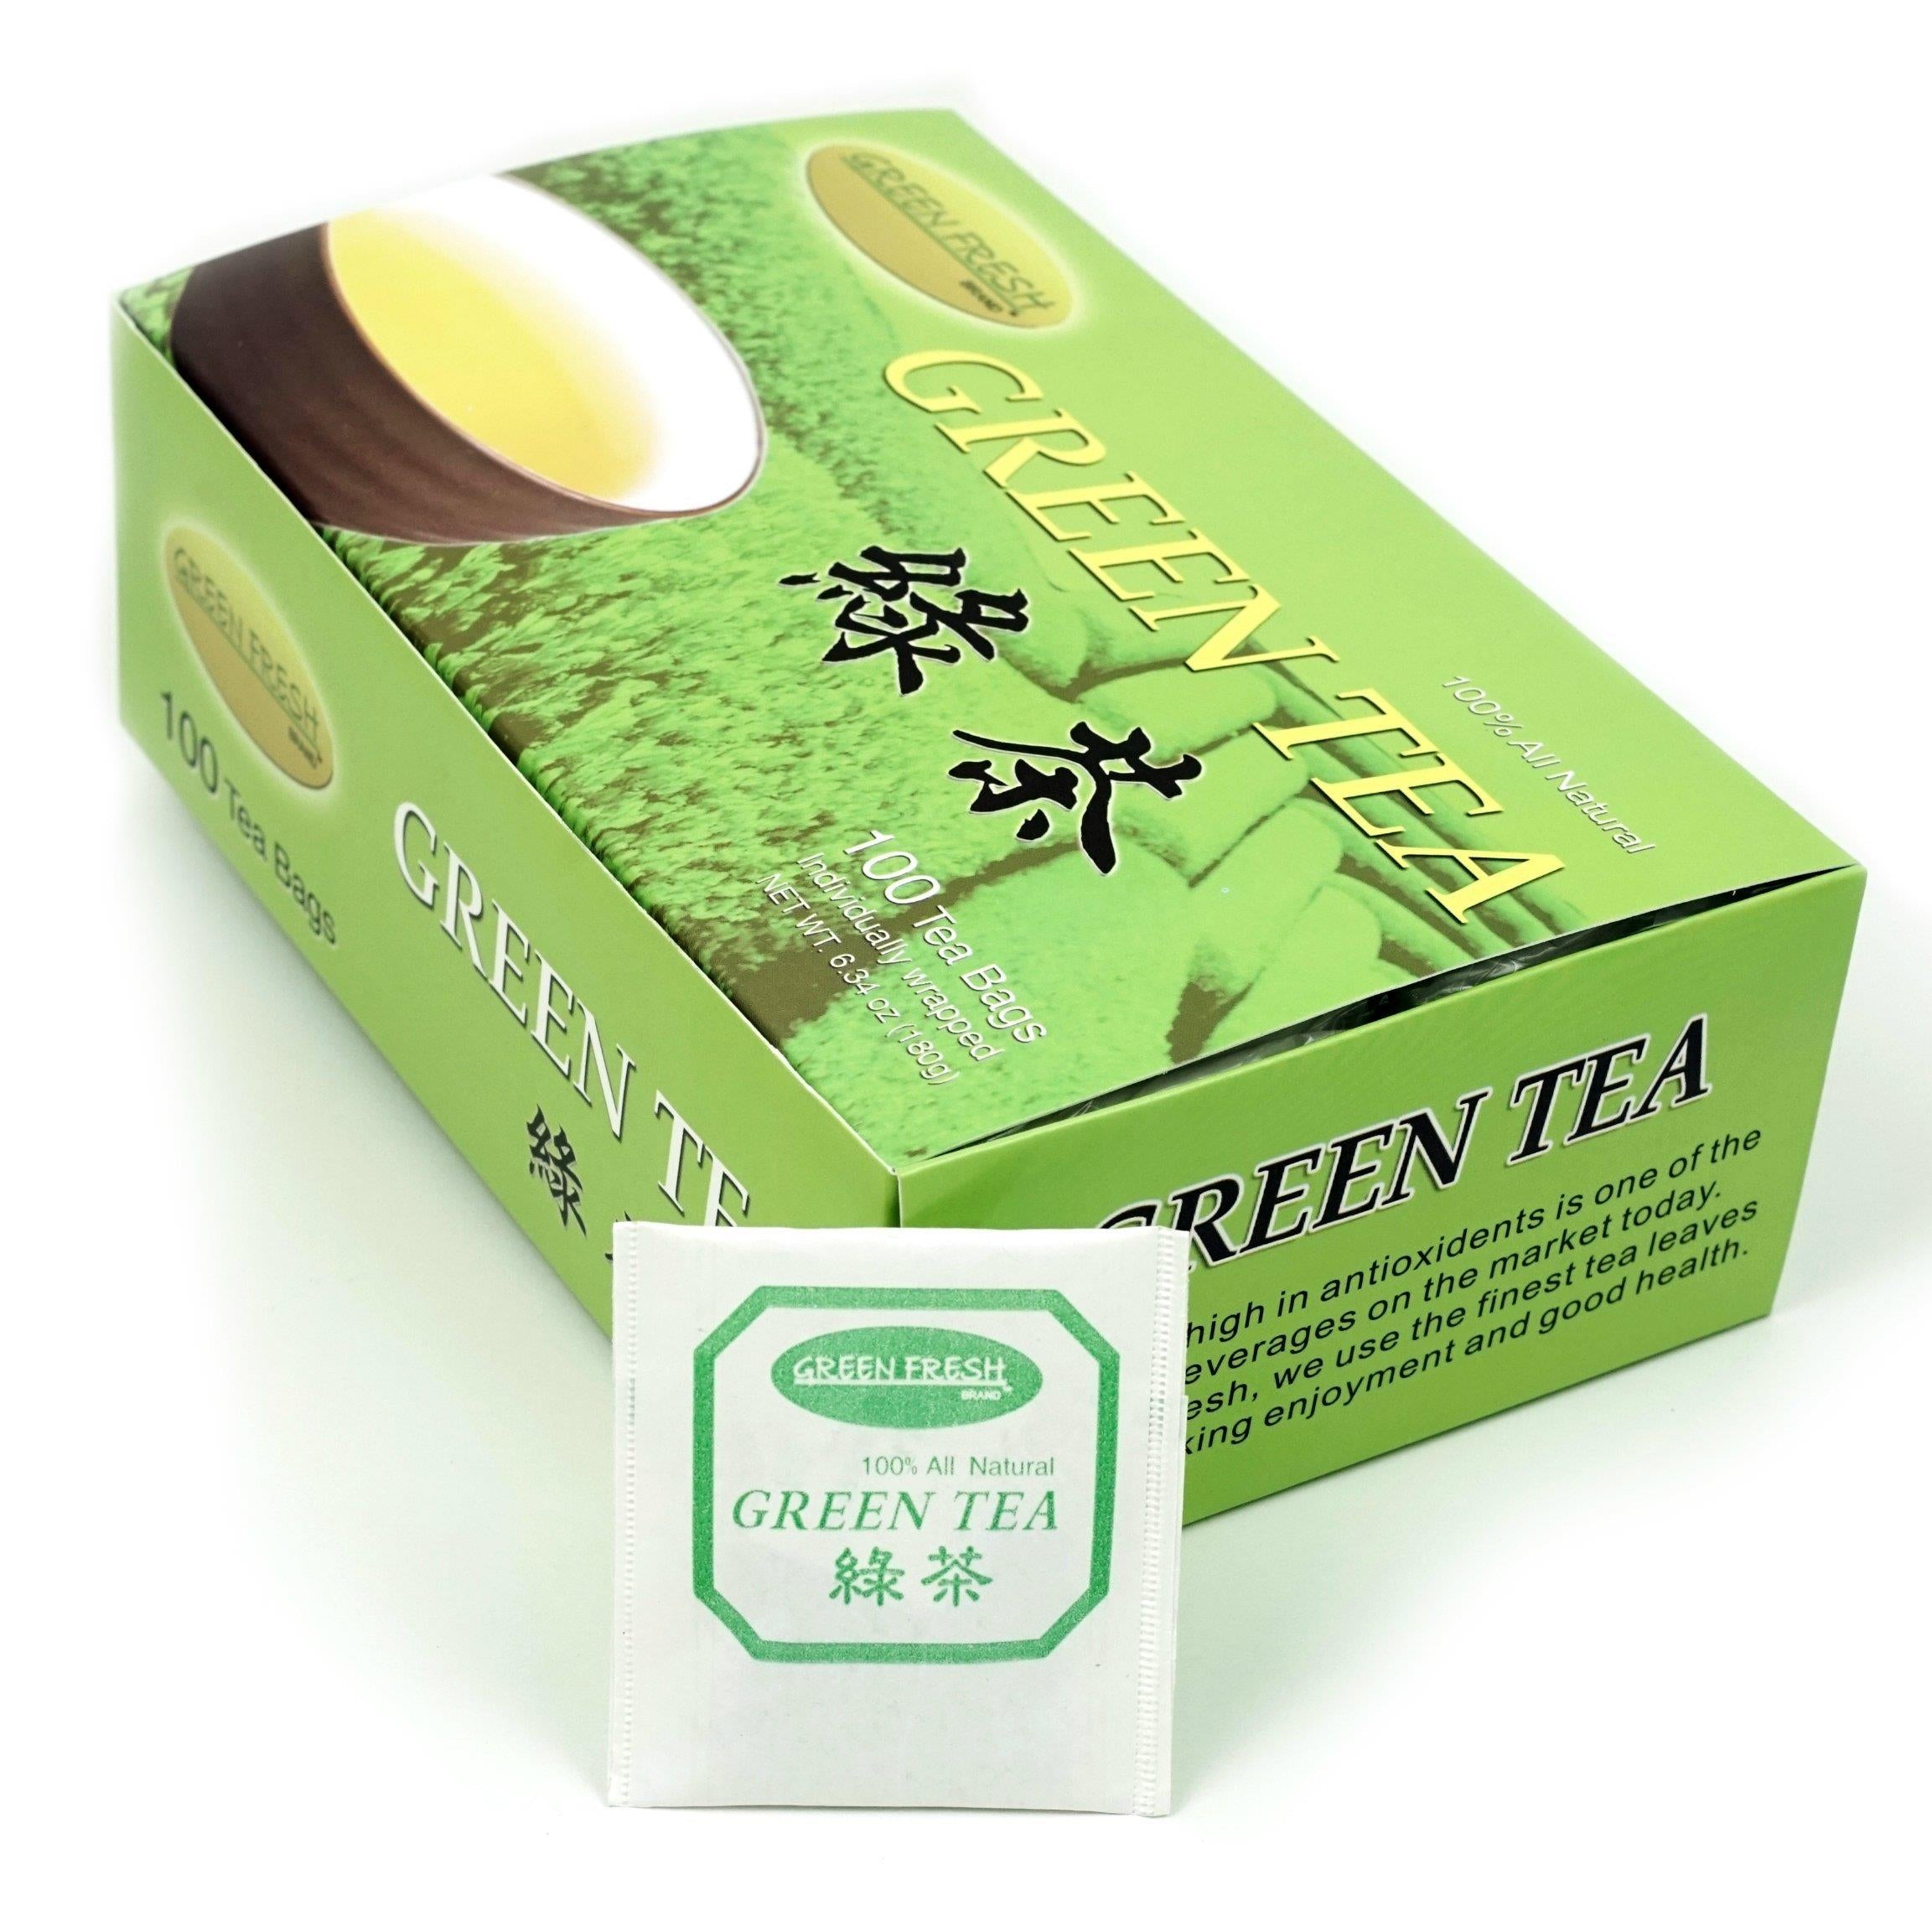 100% Natural Premium Green Tea, 100 Count Box of Tea Bags net wt 6.34 oz (180g)